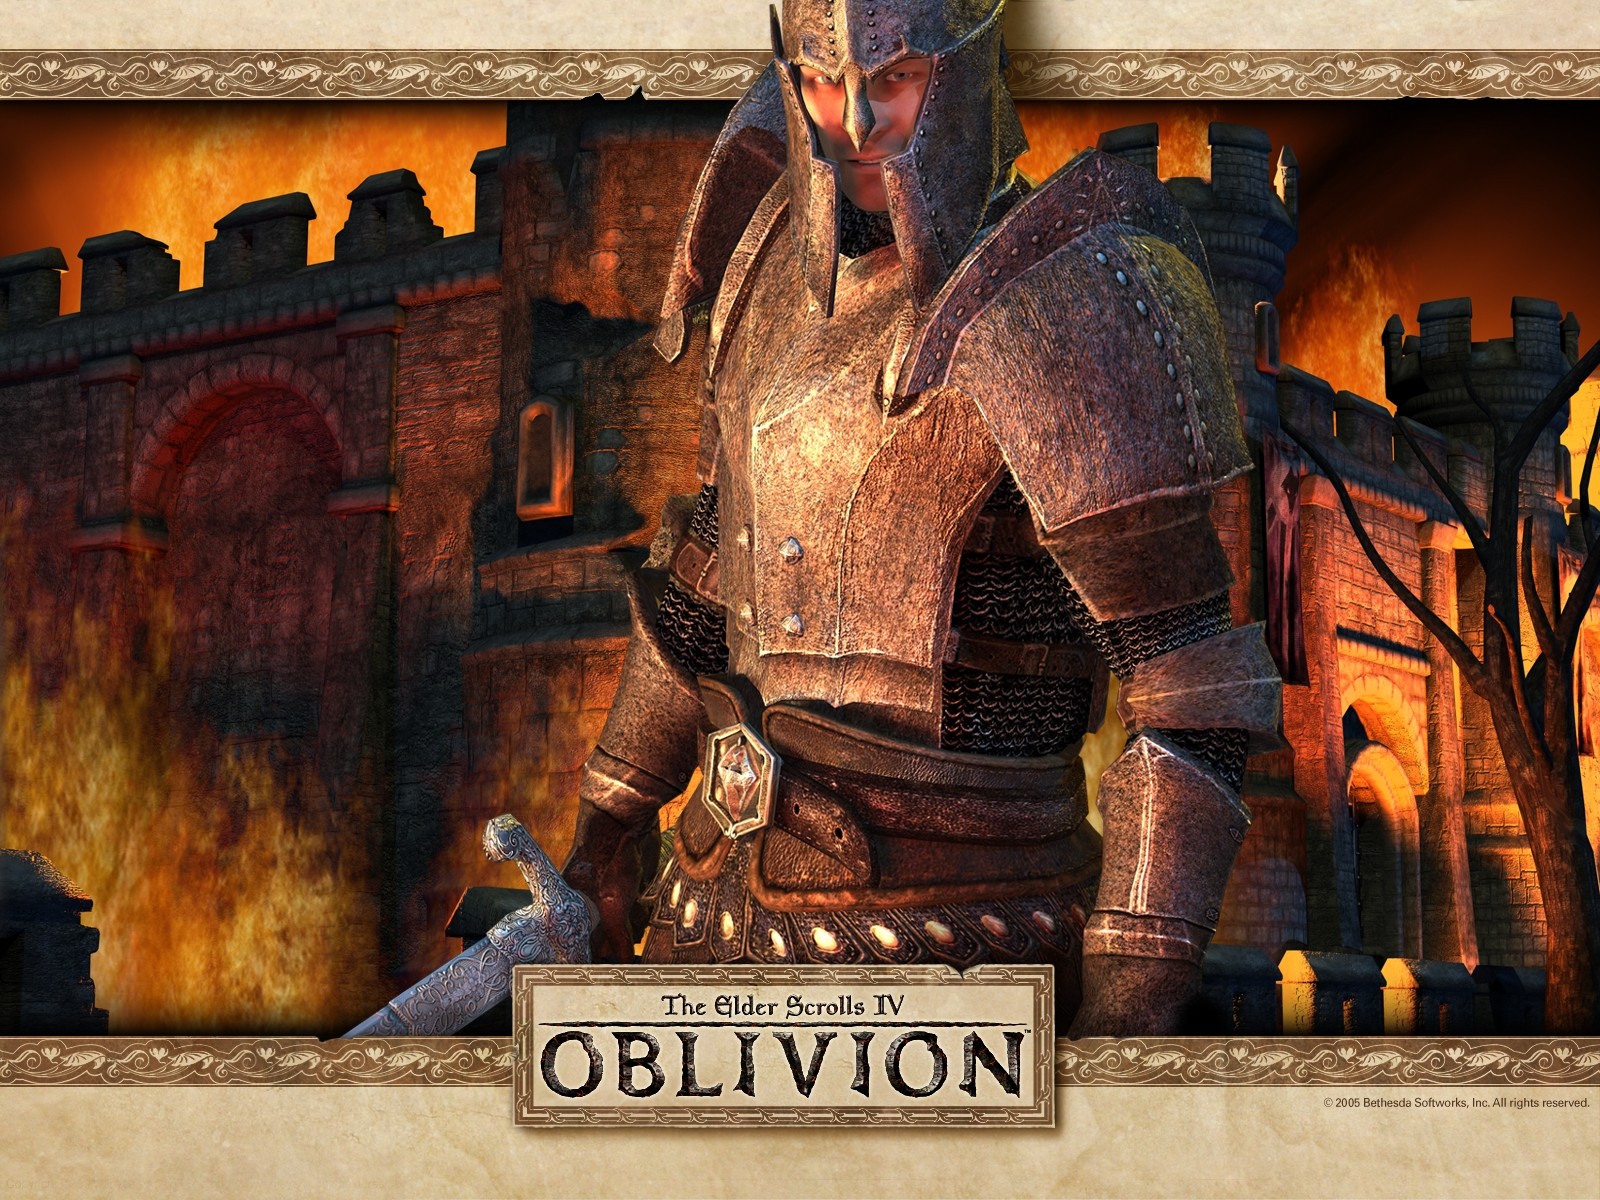 the elder scrolls iv oblivion free download full version